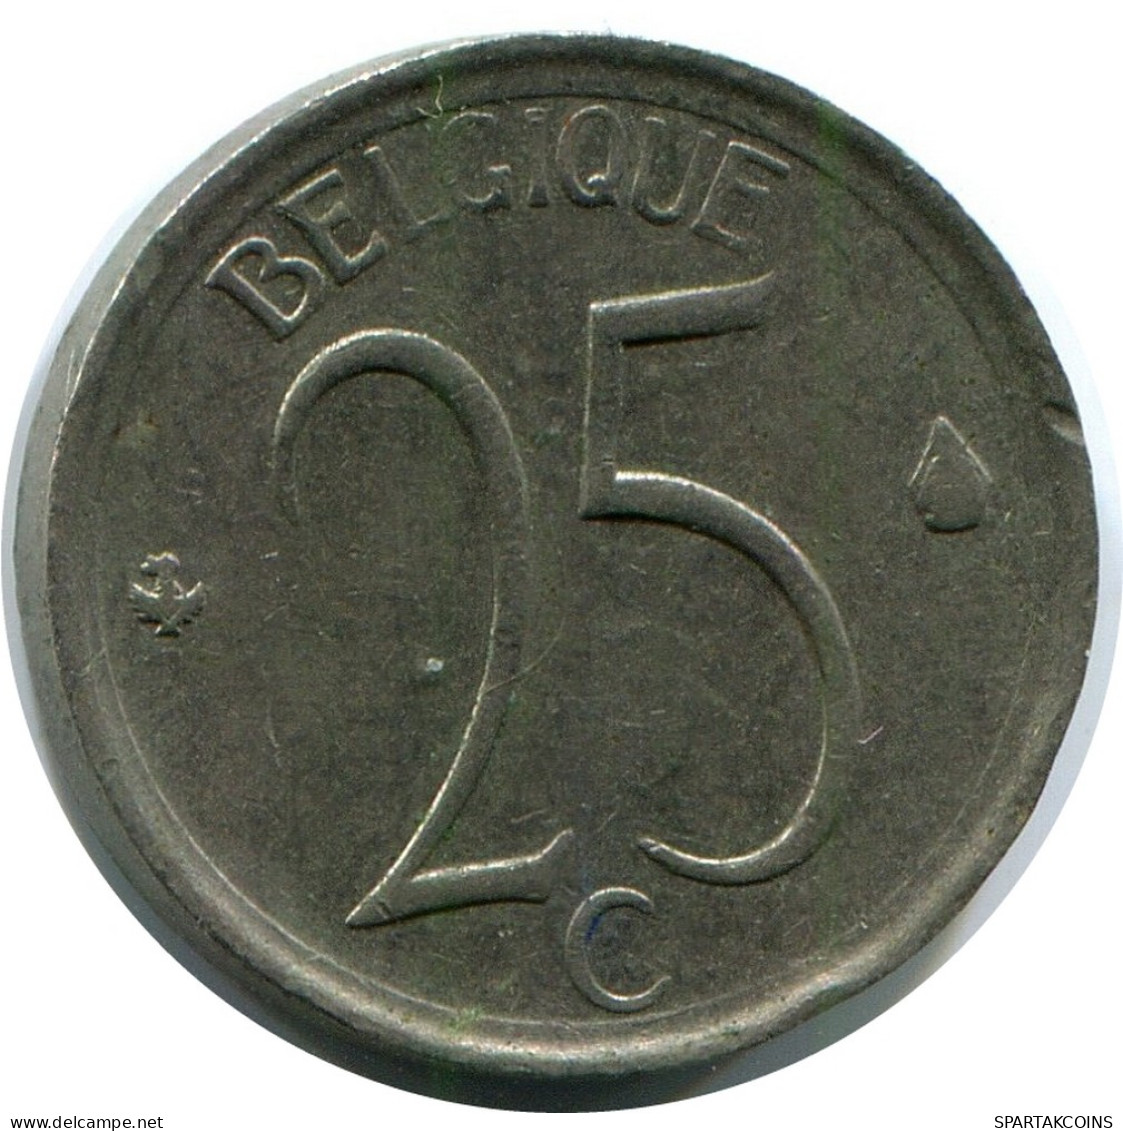 25 CENTIMES 1964 BELGIQUE BELGIUM Pièce #AH834.1.F - 25 Centimes